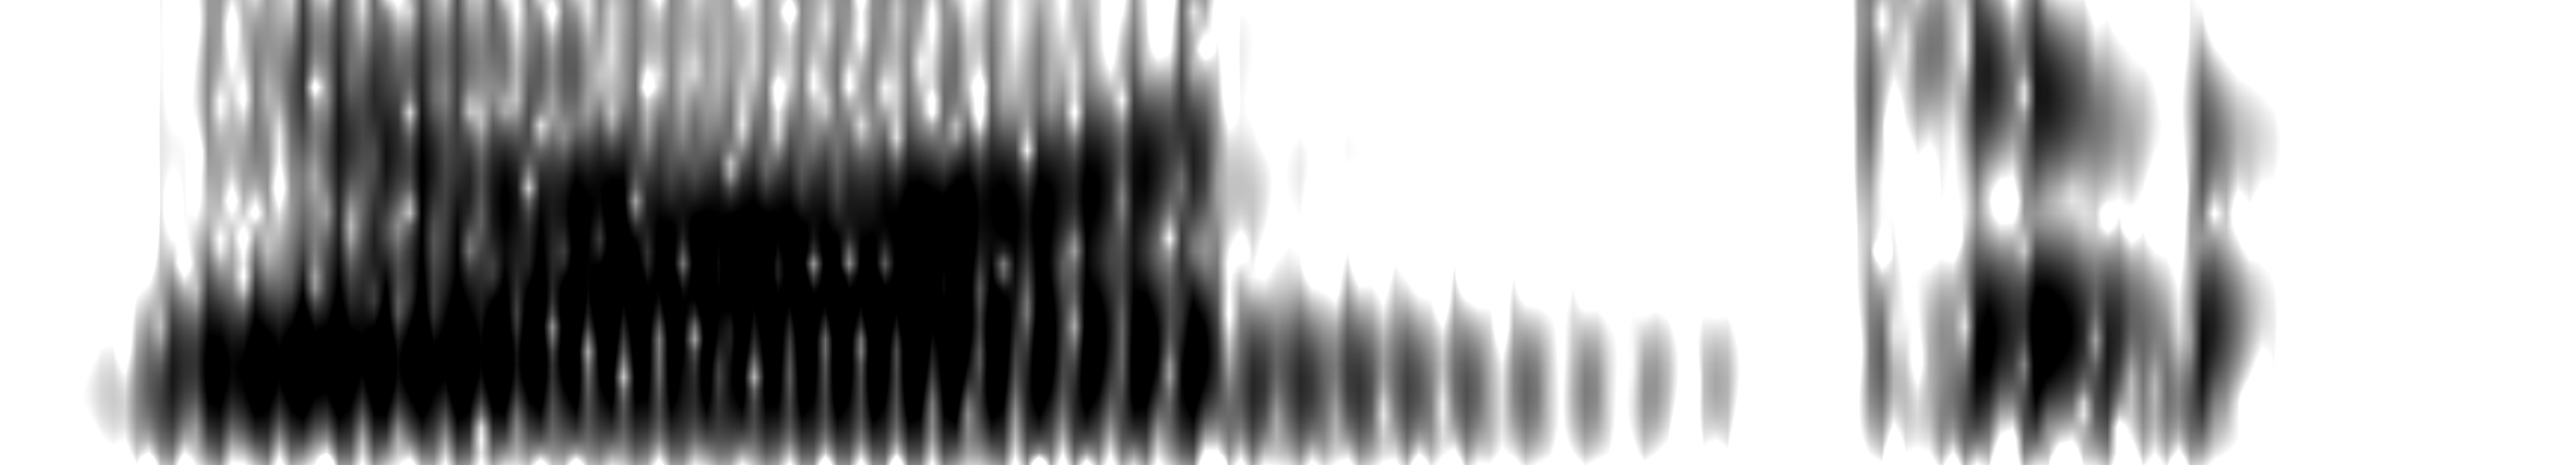 (43) Forma d onda e relativo spettrogramma a banda larga di [»nuí u] nessuno, nel parlato di un soggetto maschio di Enna.. 7 7 1 8 -. 8 3 3 7.4 4 3 8 1 T im e (s ) 6.